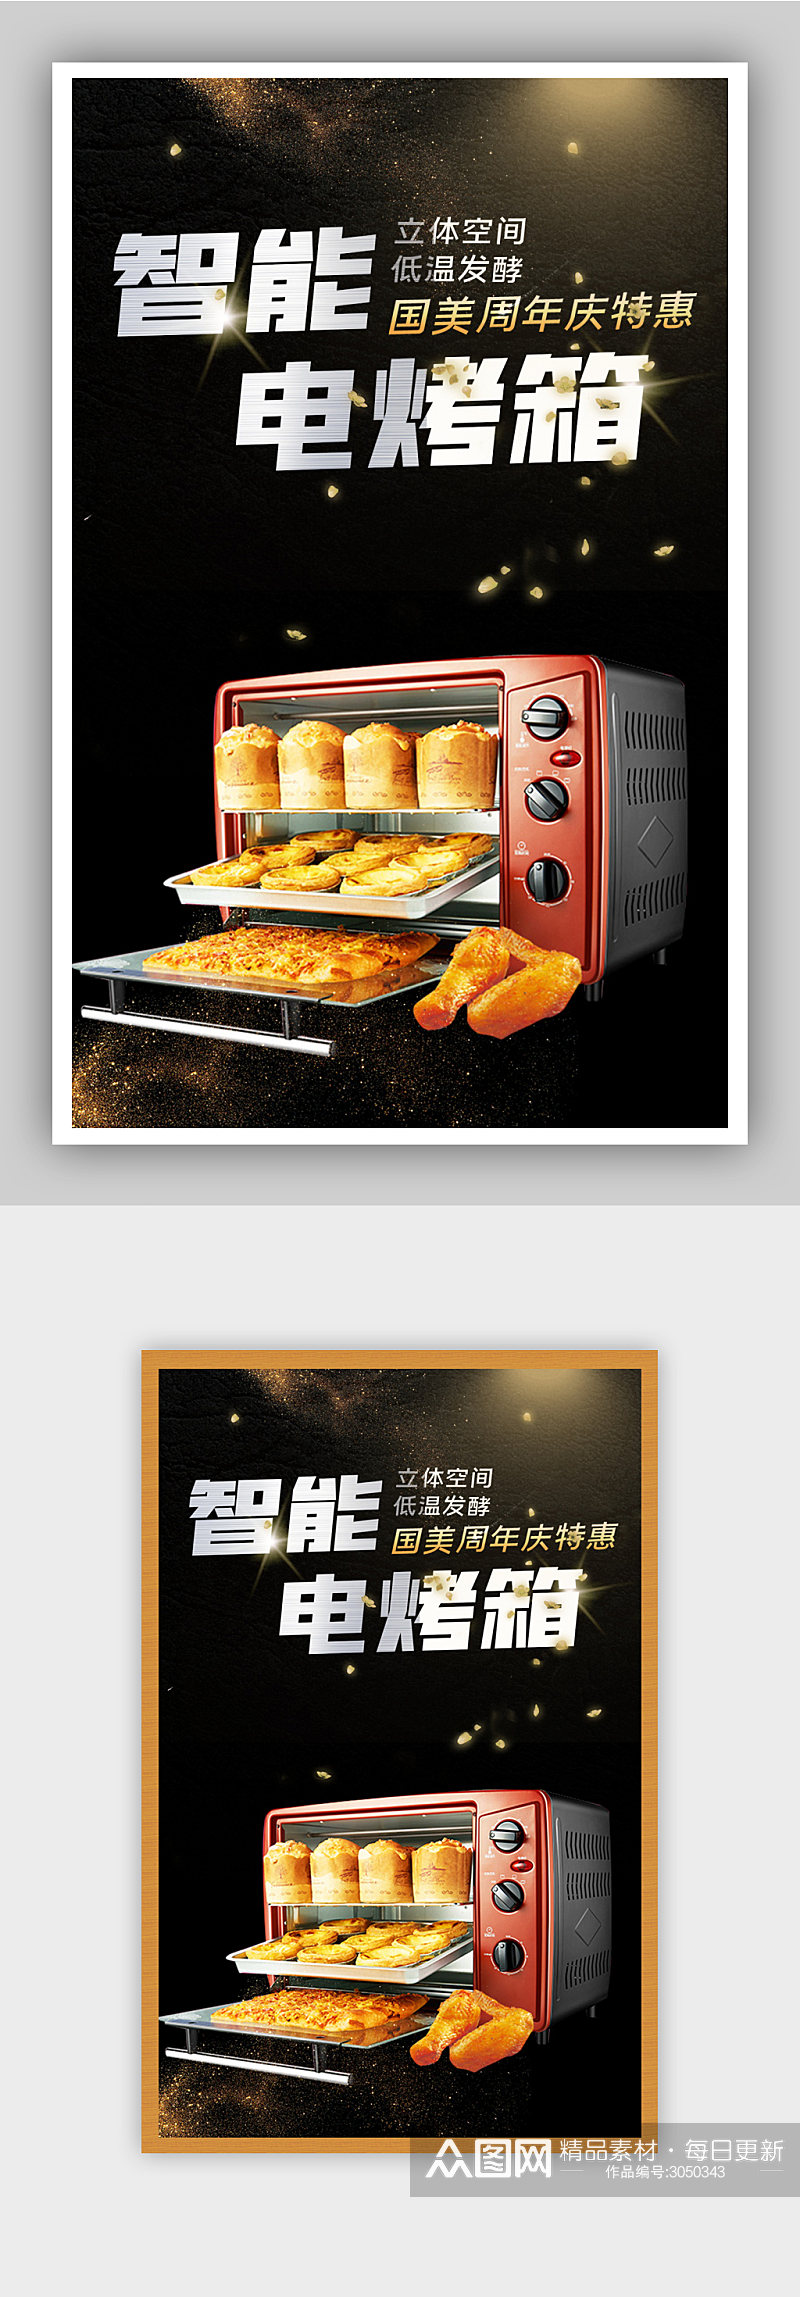 智能家电电烤箱电商背景海报素材